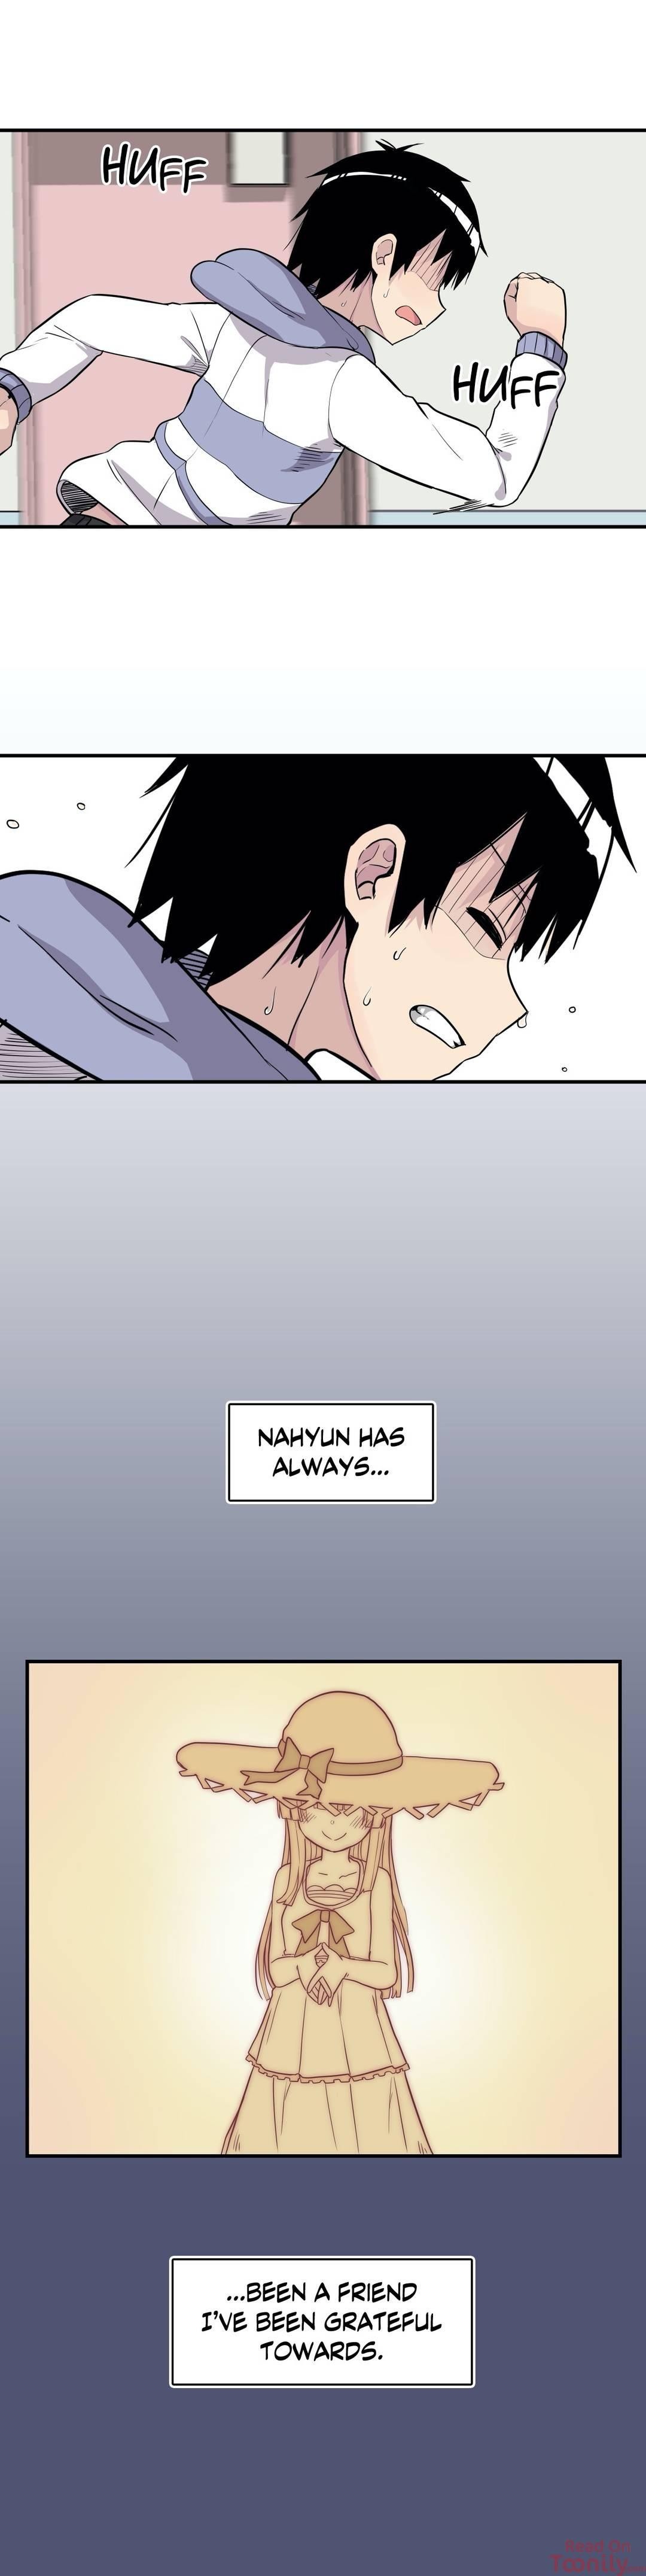 Erotic Manga Department! - Page 1